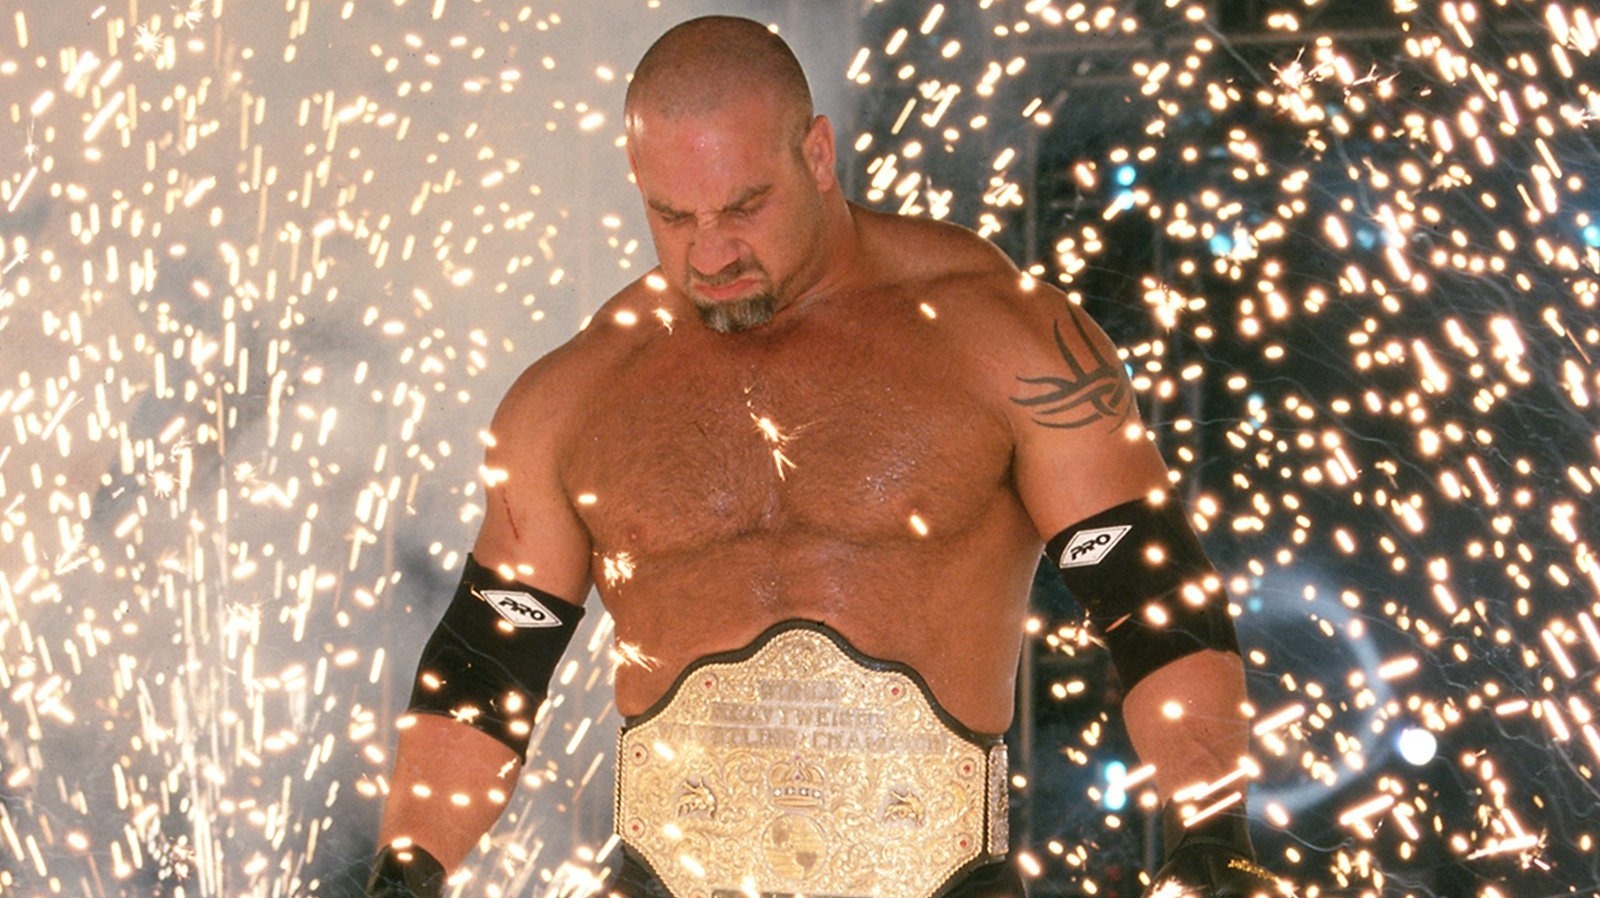 Kevin Sullivan habla sobre la creación de Goldberg en WCW sin capacidad de lucha libre